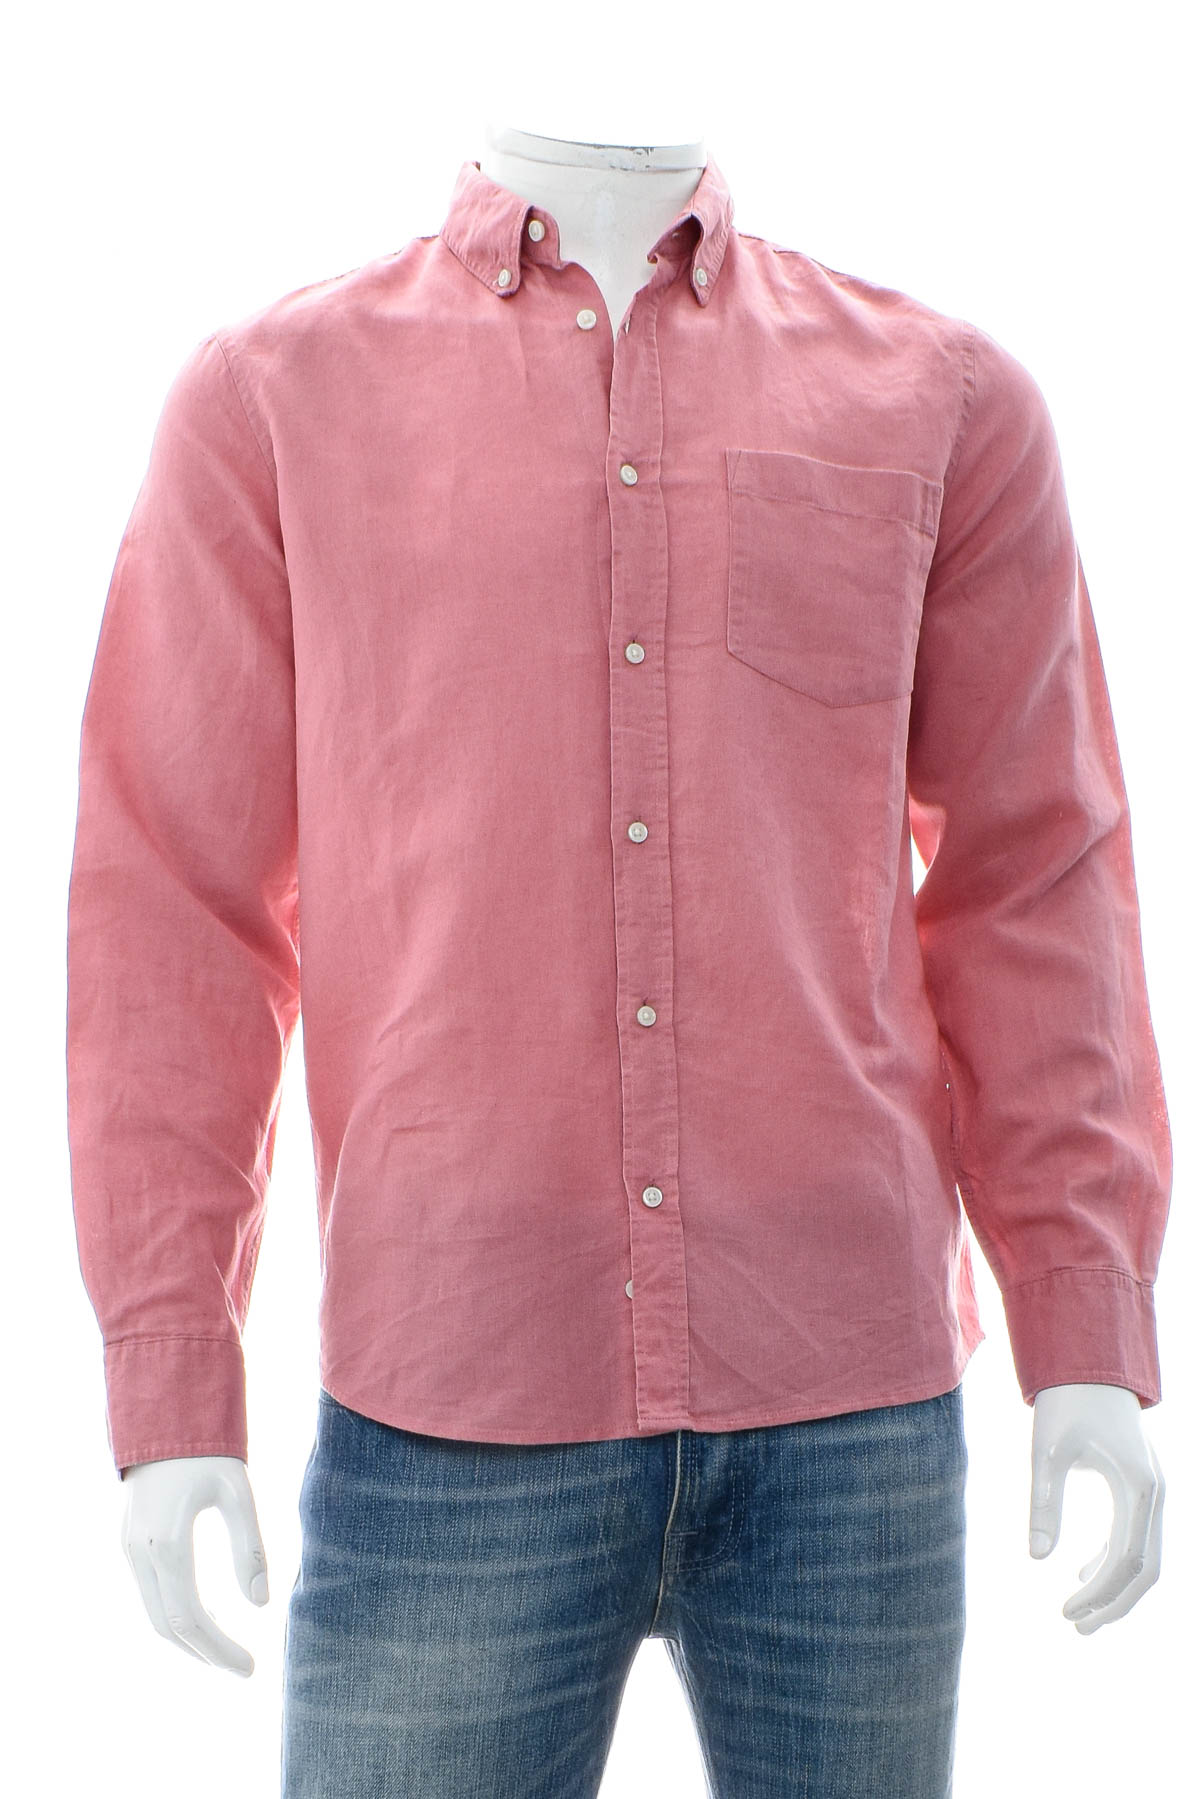 Ανδρικό πουκάμισο - ZARA - 0